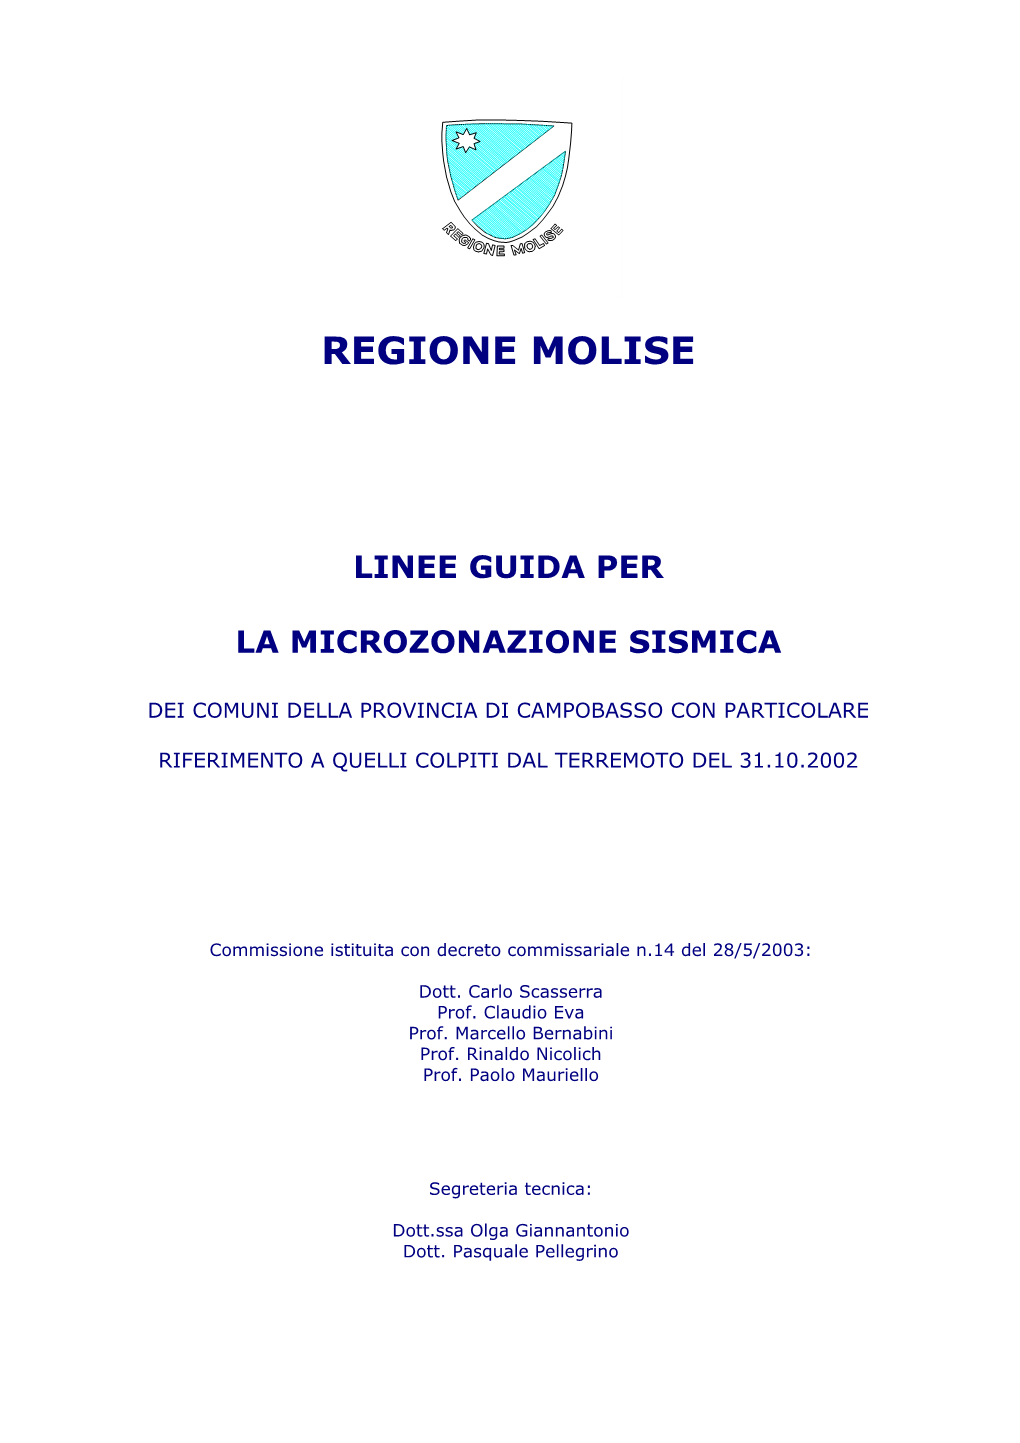 Linee Guida Per La Microzonazione Sismica Dei Comuni Della Provincia Di Campobasso Colpiti Dal Terremoto Del 31.10.2002